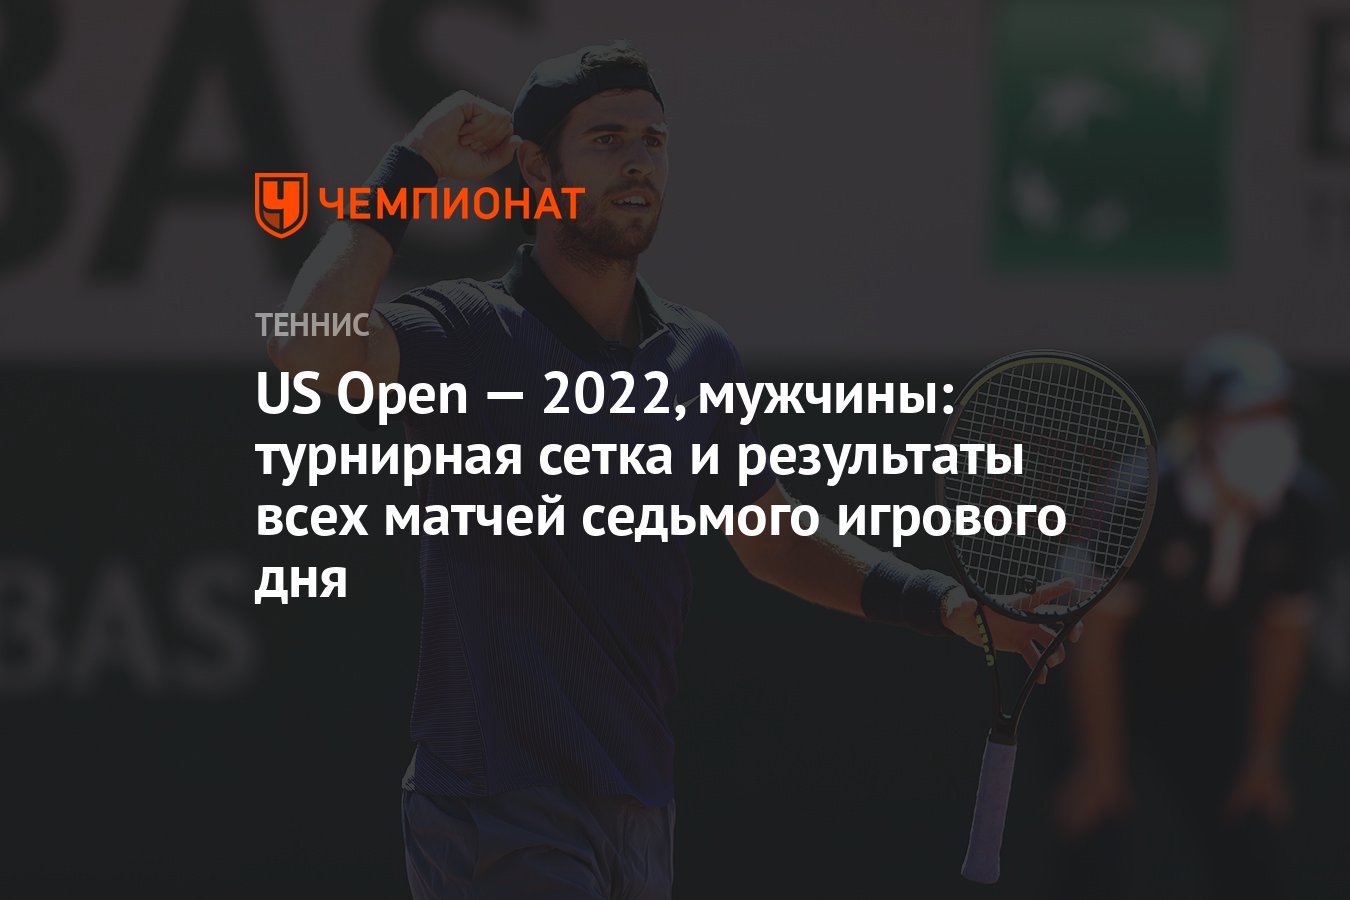 Индиан уэльс теннис 2024 мужчины сетка